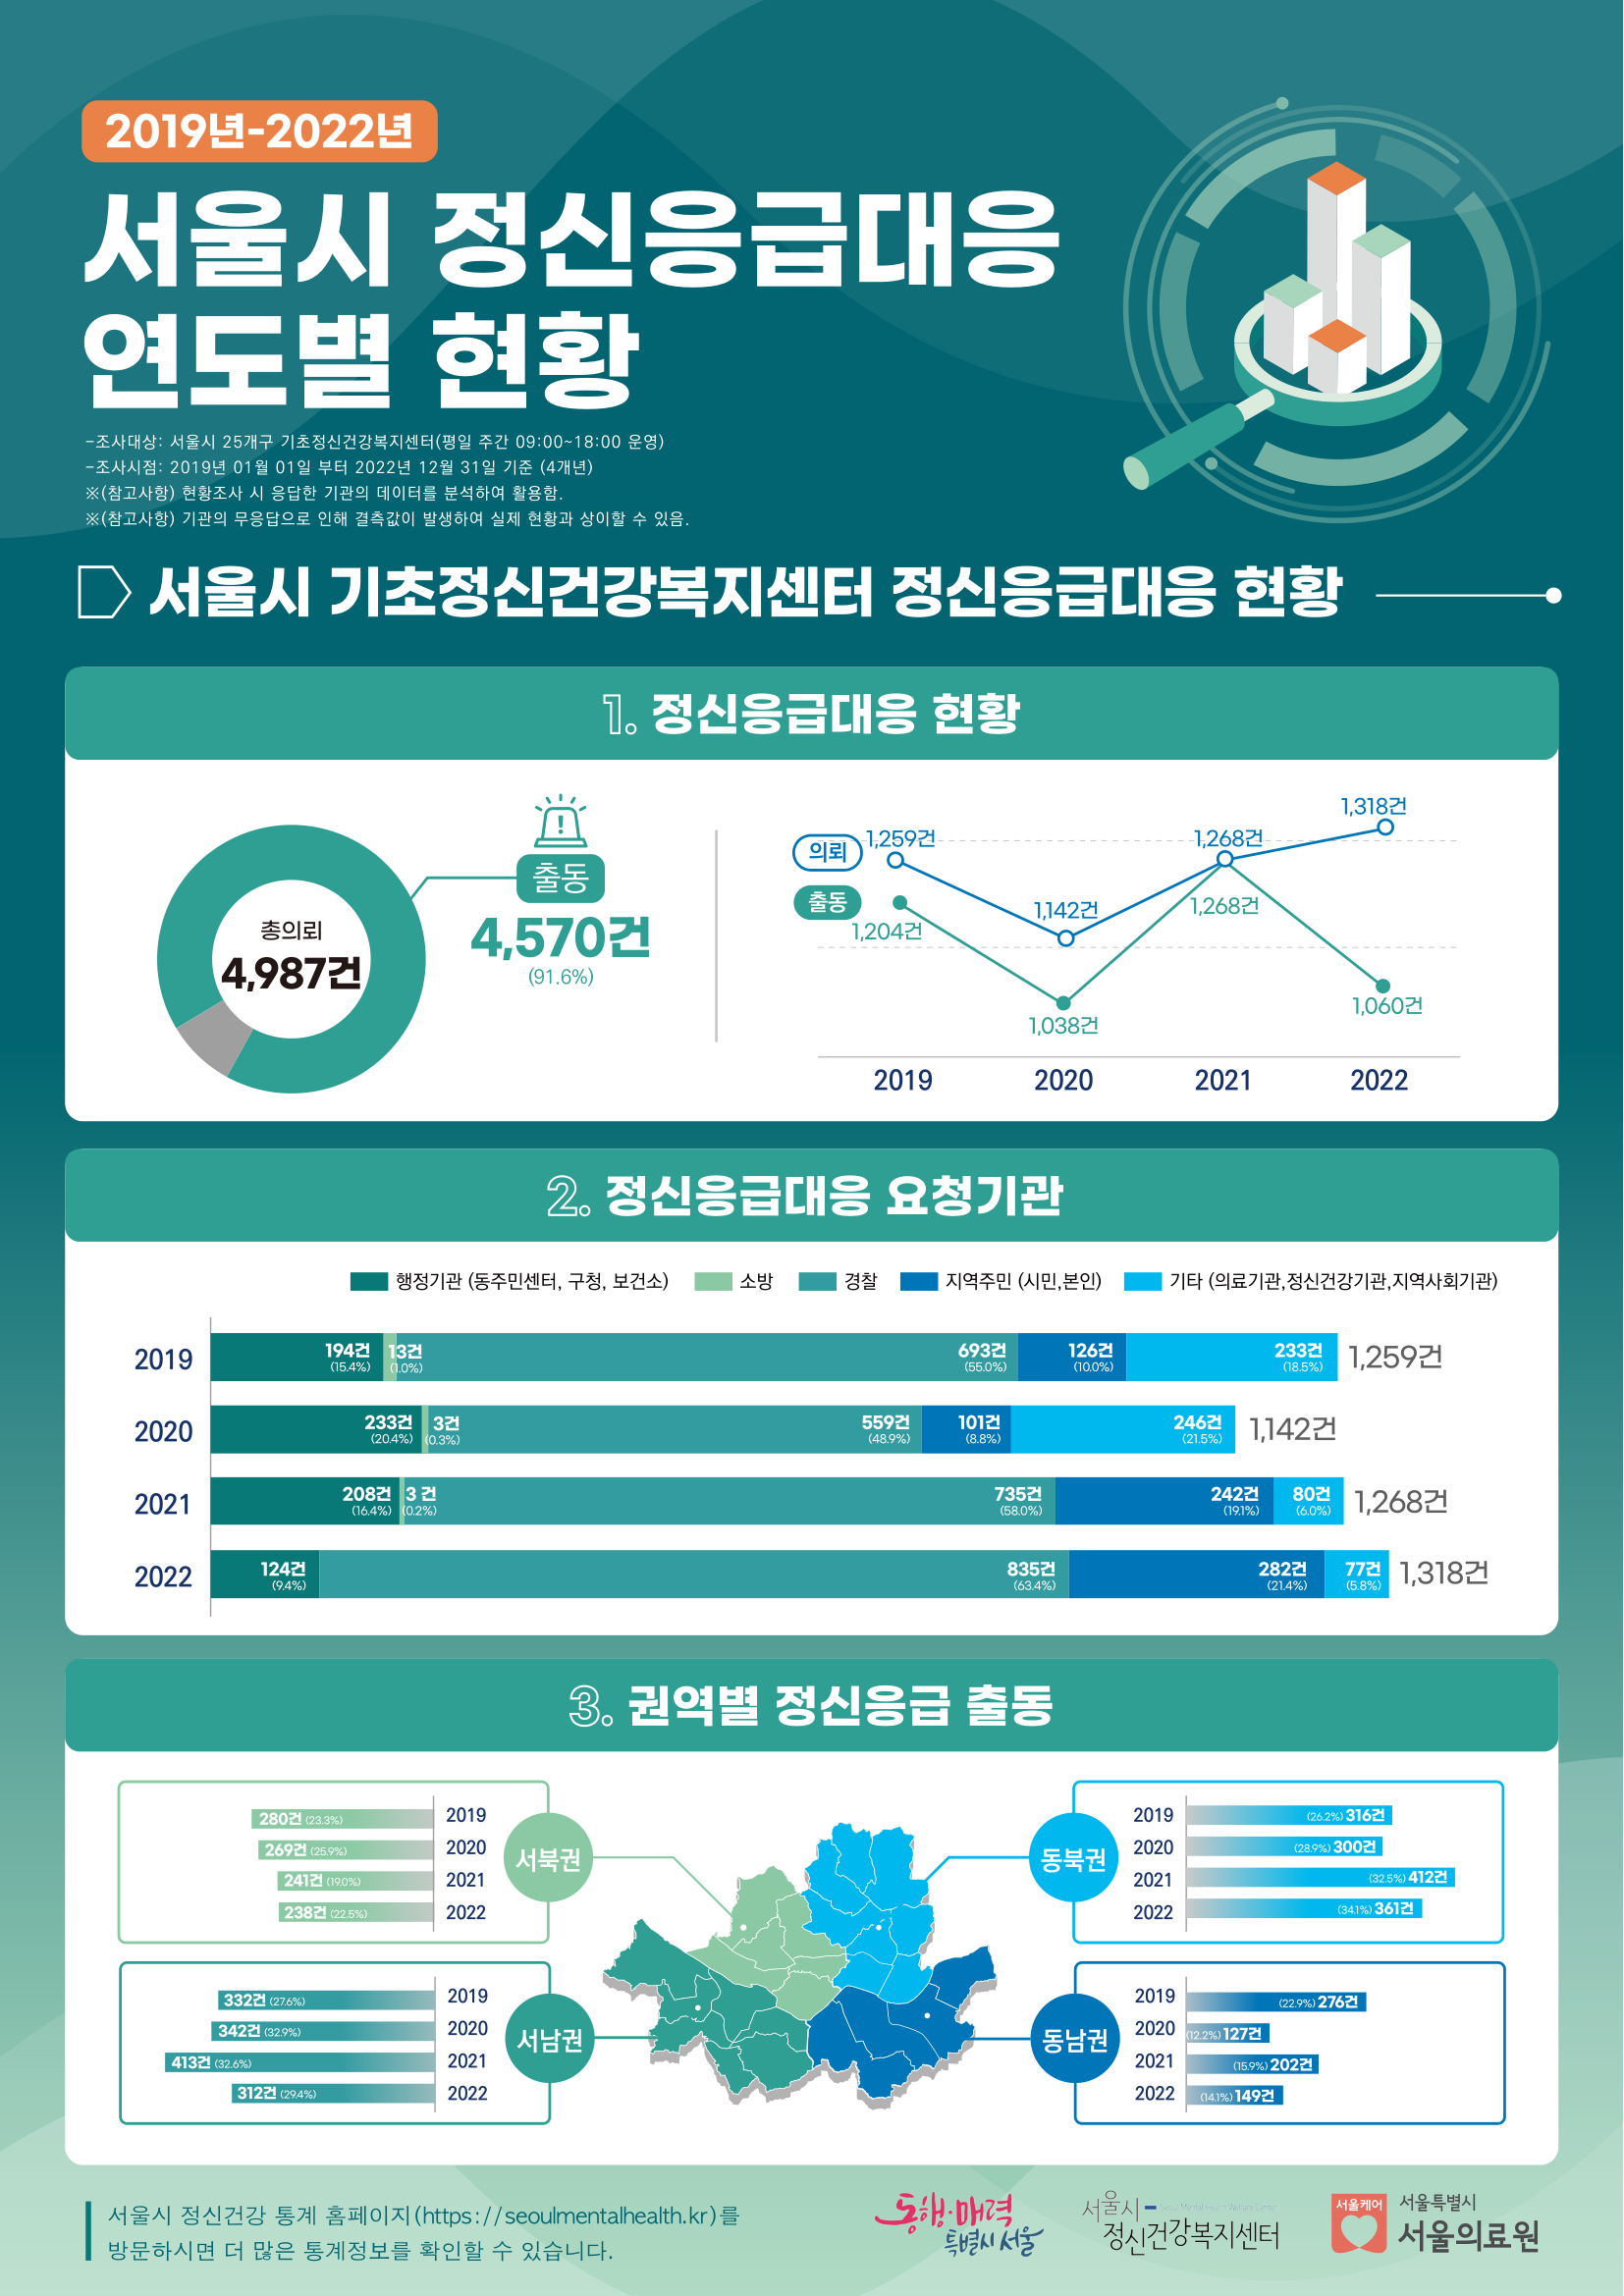 [인포그래픽] 2019년-2022년 서울시 정신응급대응 연도별 현황